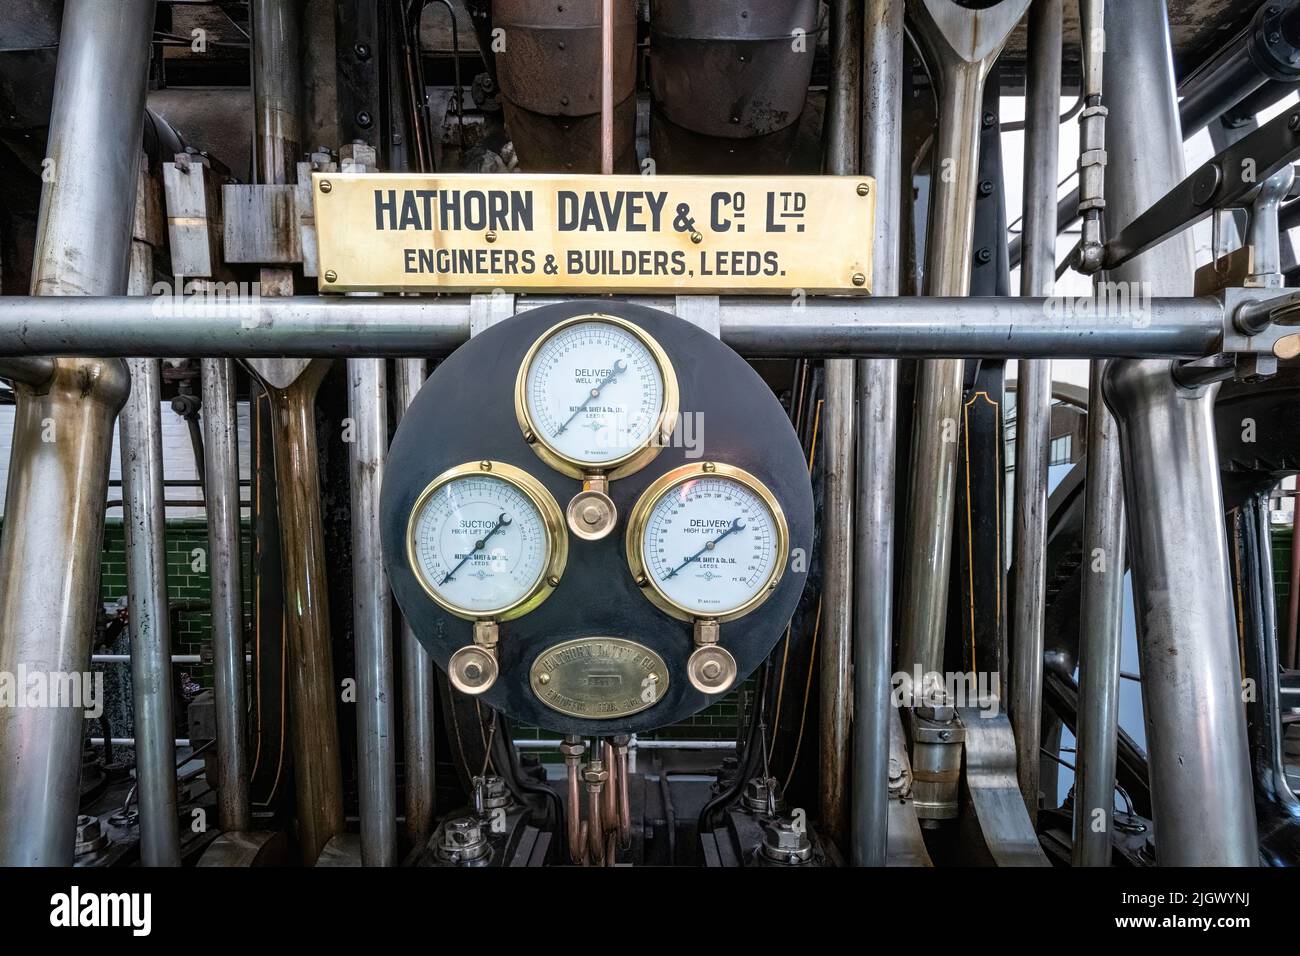 Motore a vapore Hathorn Davey presso Twyford Waterworks, una stazione di pompaggio e depurazione dell'acqua edoardiana nell'Hampshire, Inghilterra, Regno Unito. Attrazione turistica Foto Stock